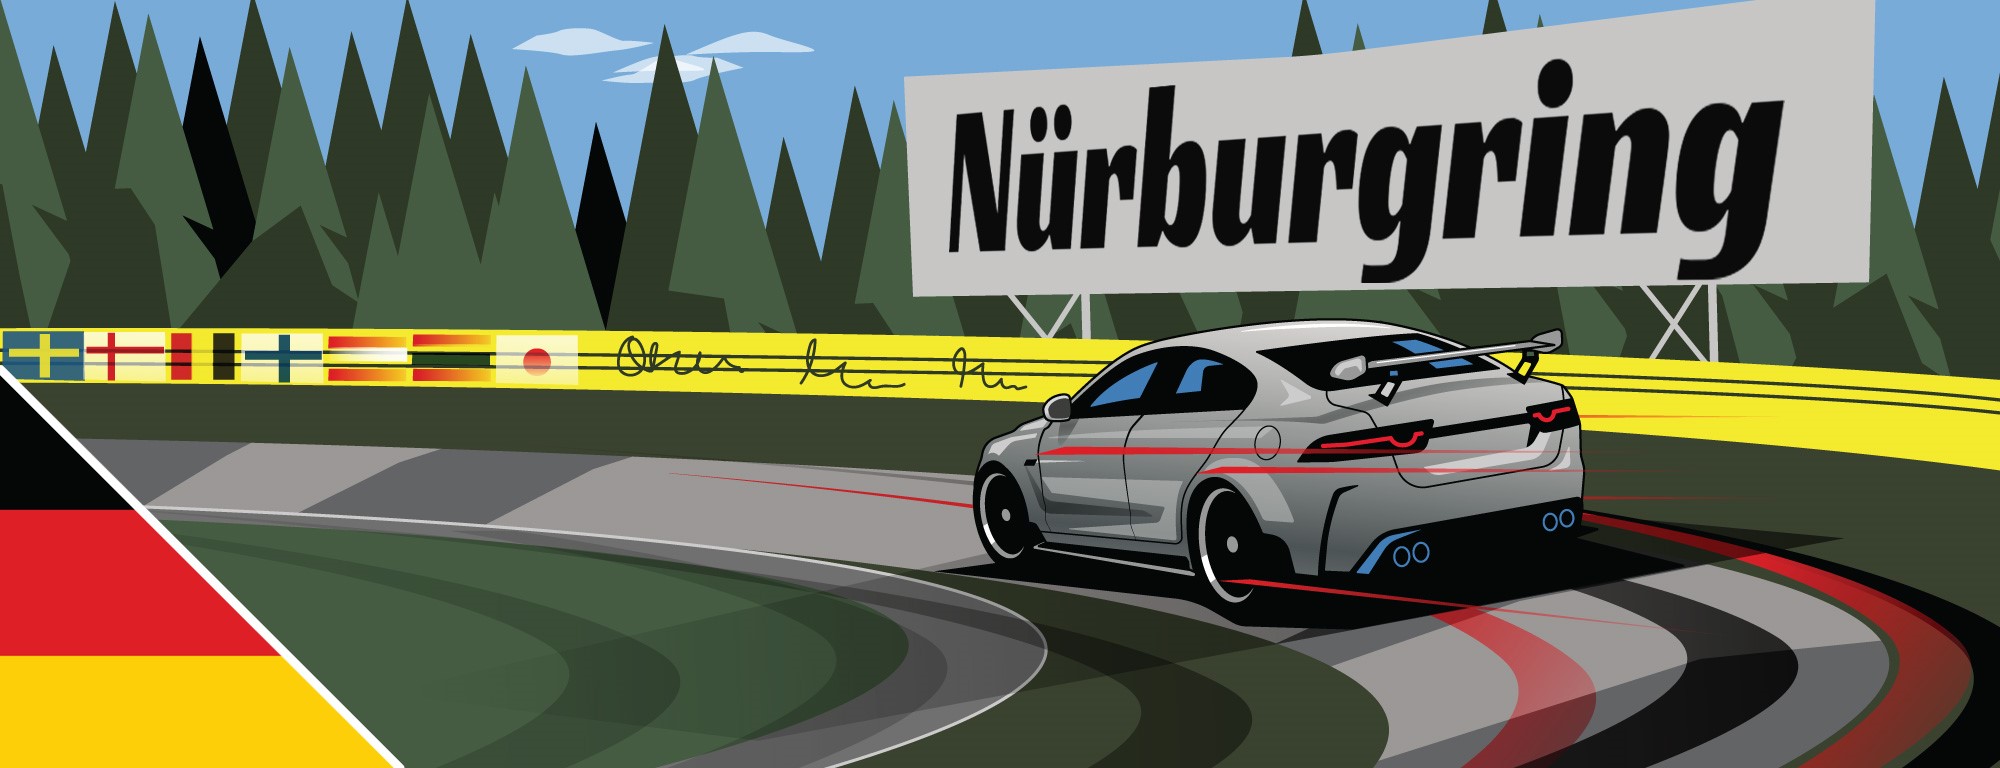 Circuit Days - Nurburgring